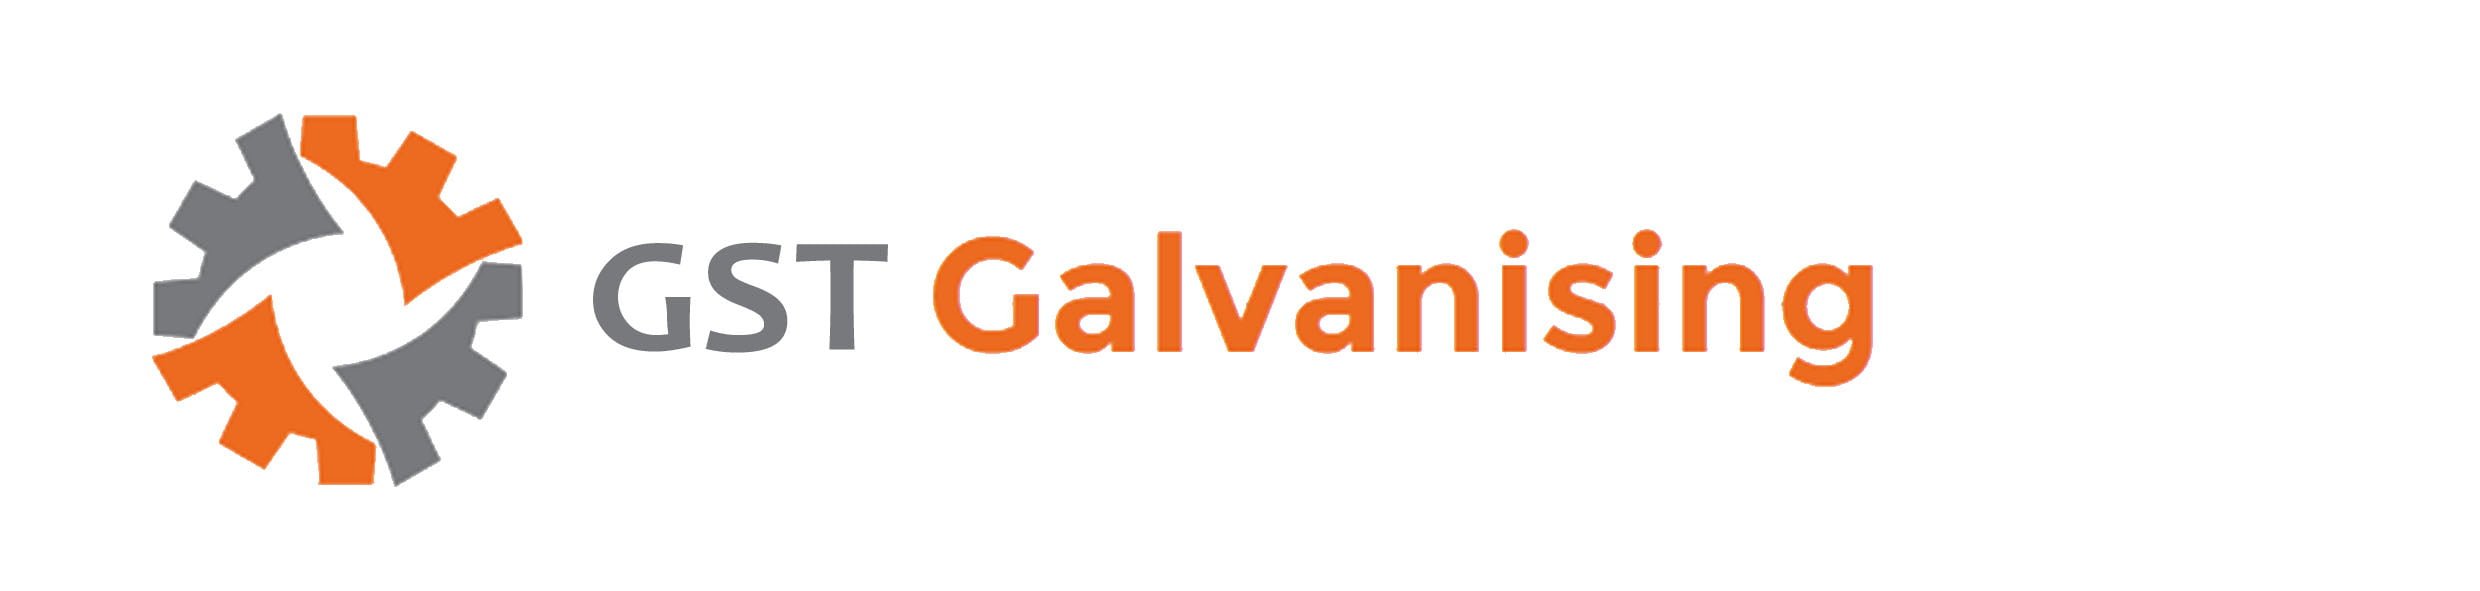 GST Galvanising | Hot dip galvanizing